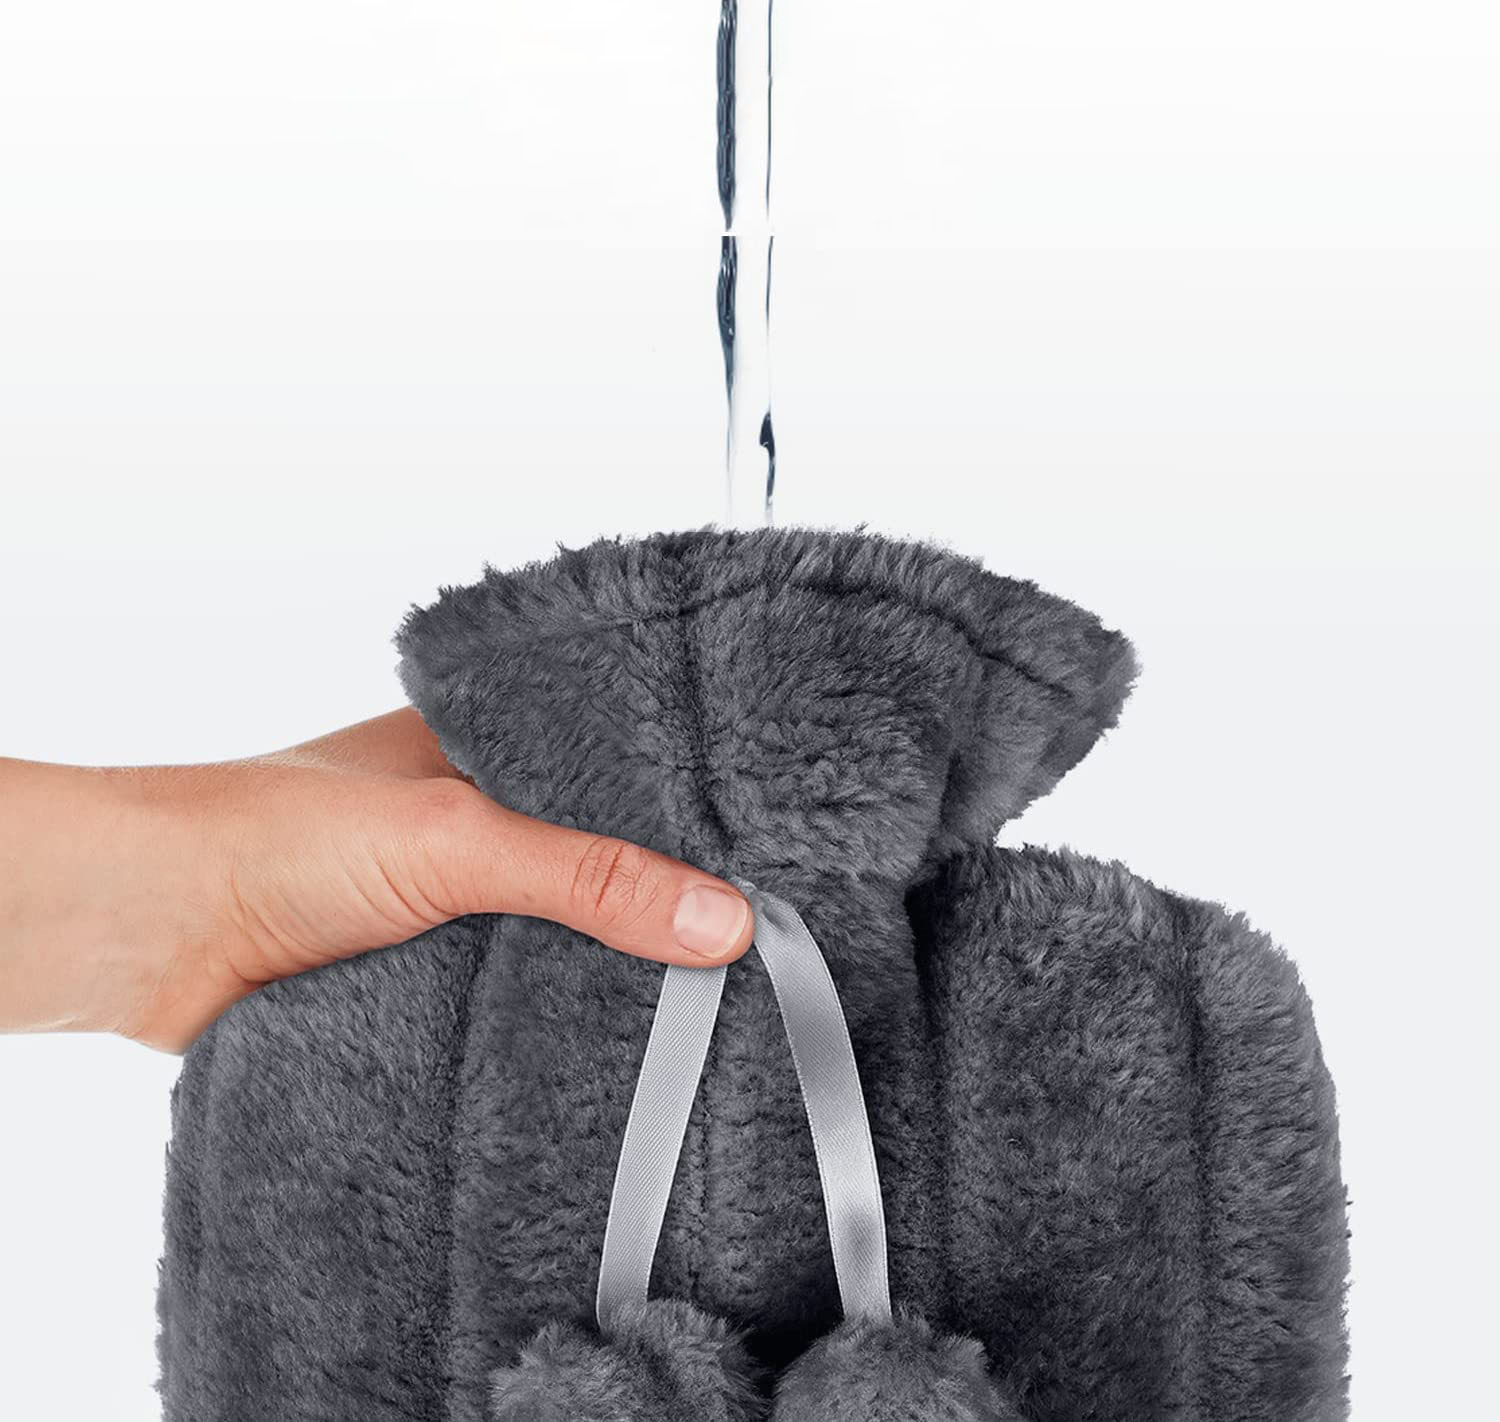 Bolsa de agua de terapia caliente de caucho natural 2L con cubierta suave para aliviar el dolor